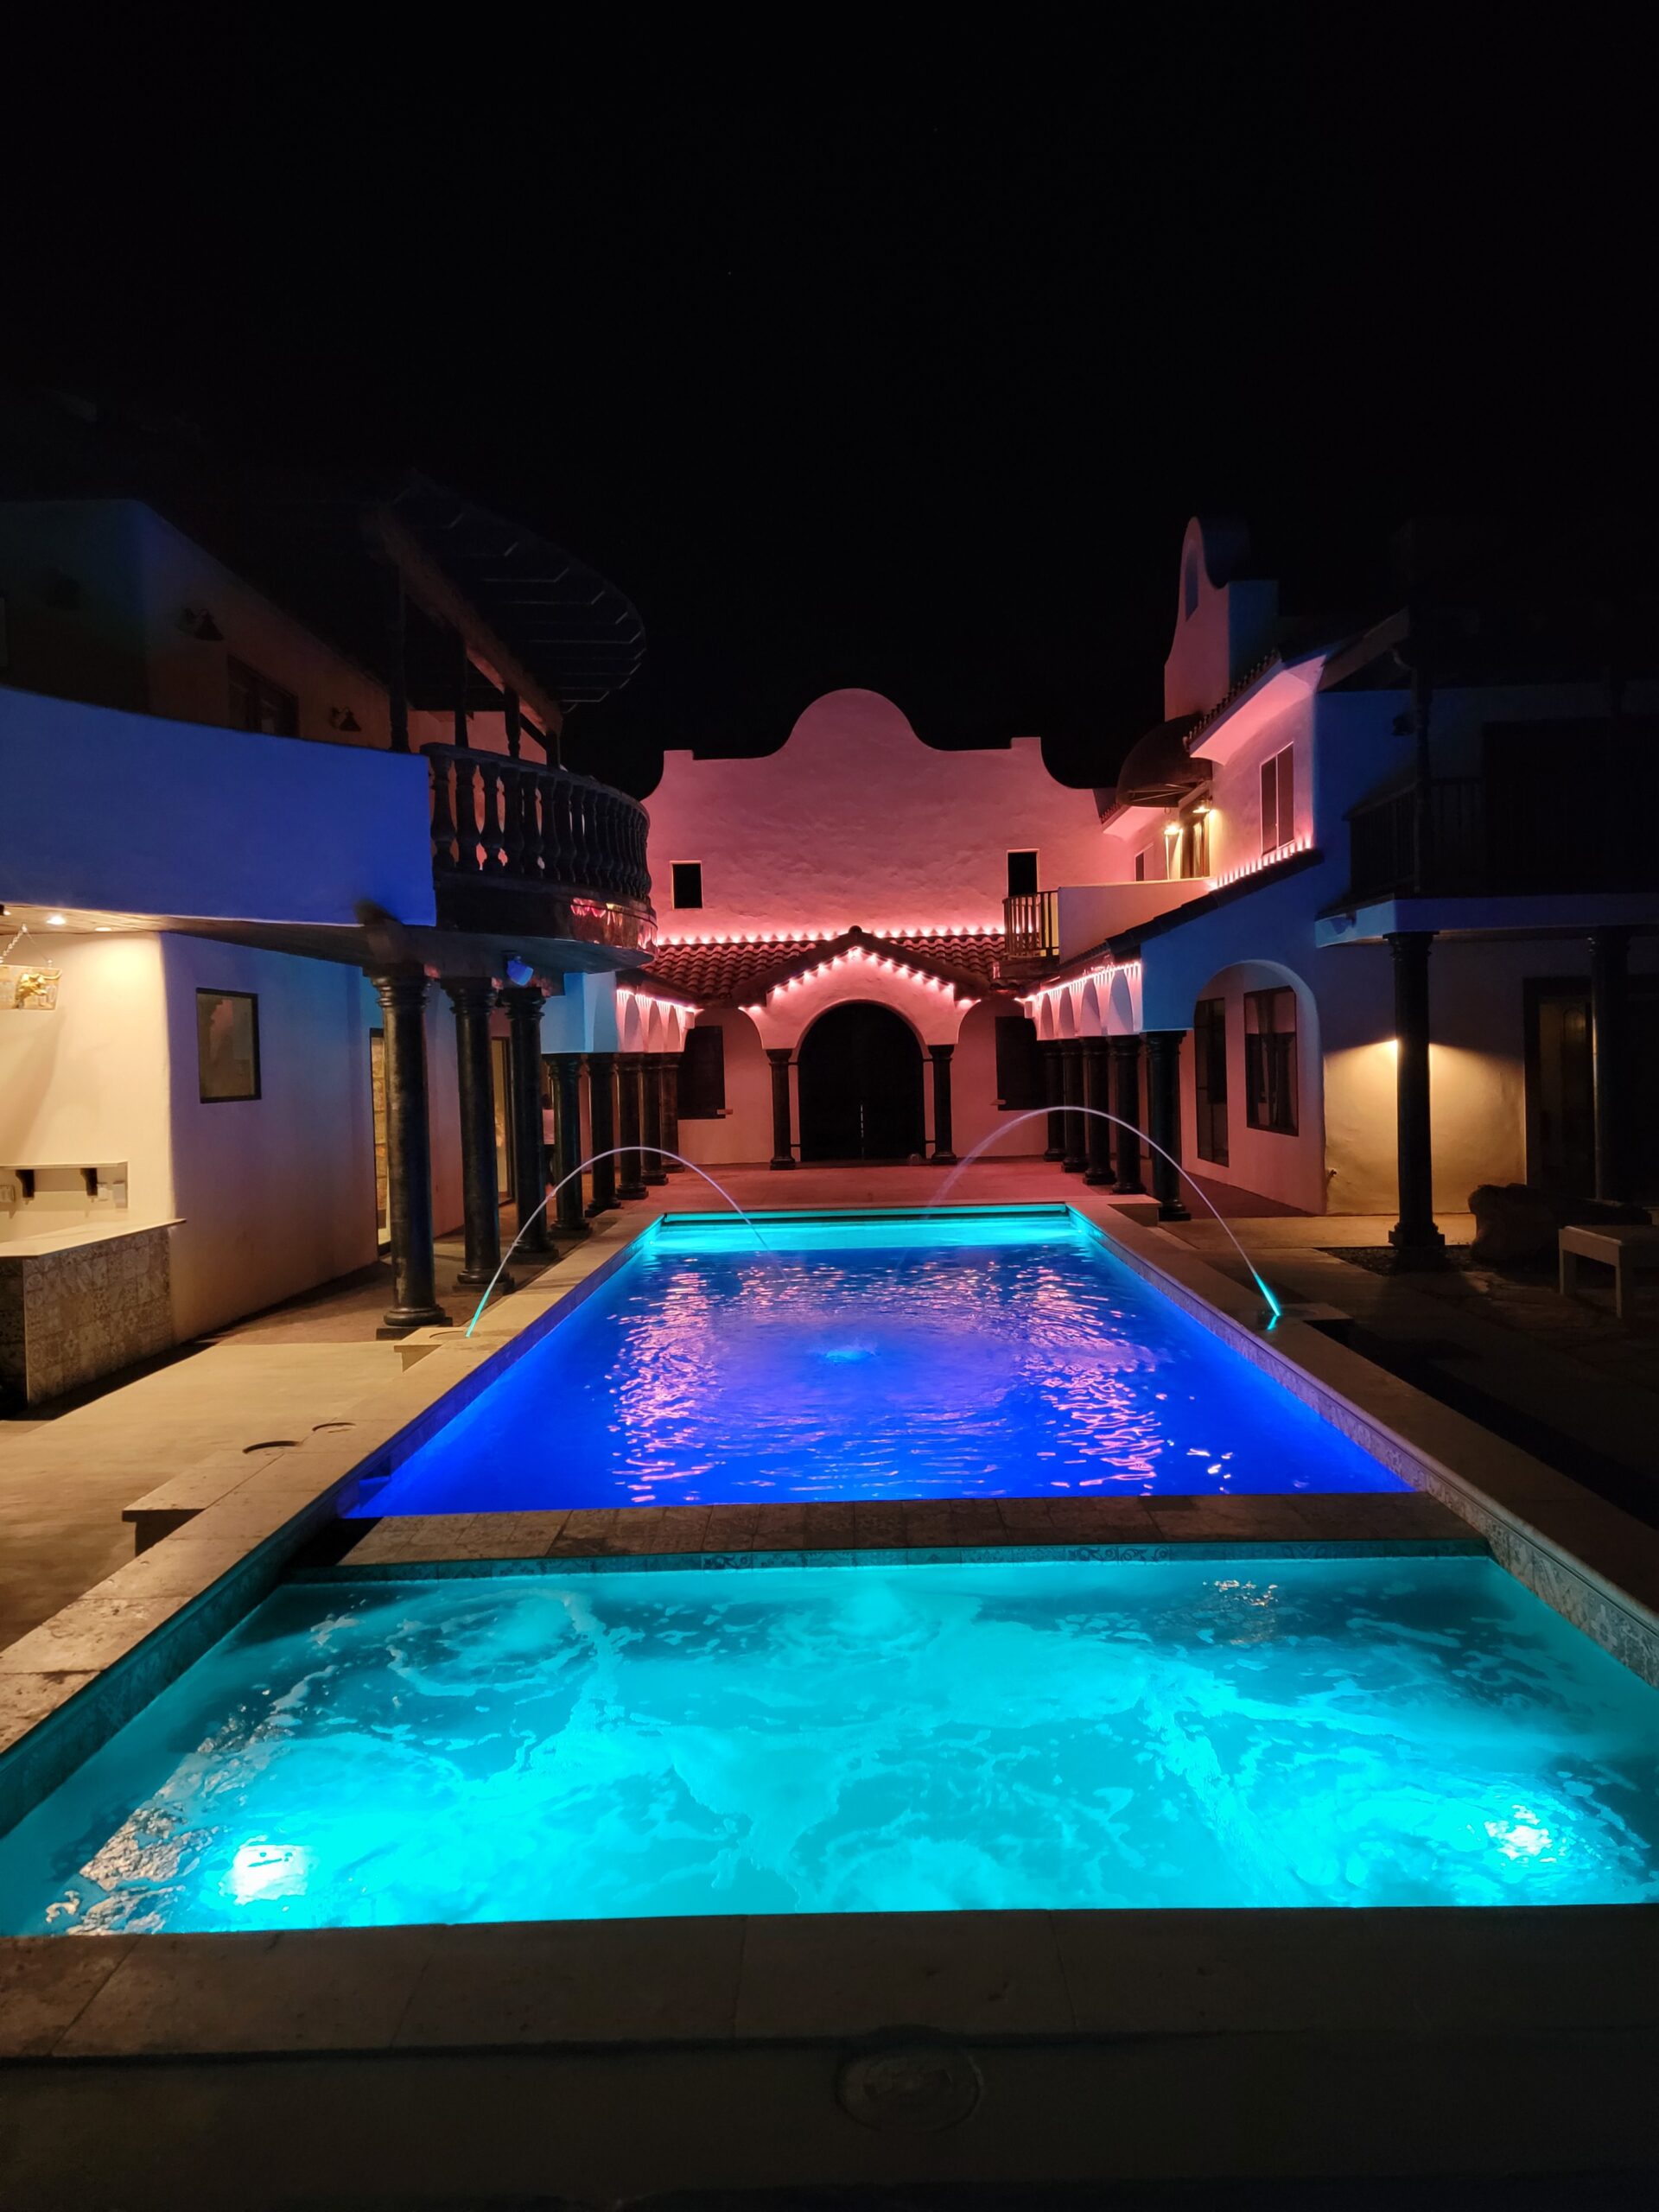 Pool & Spa at Night